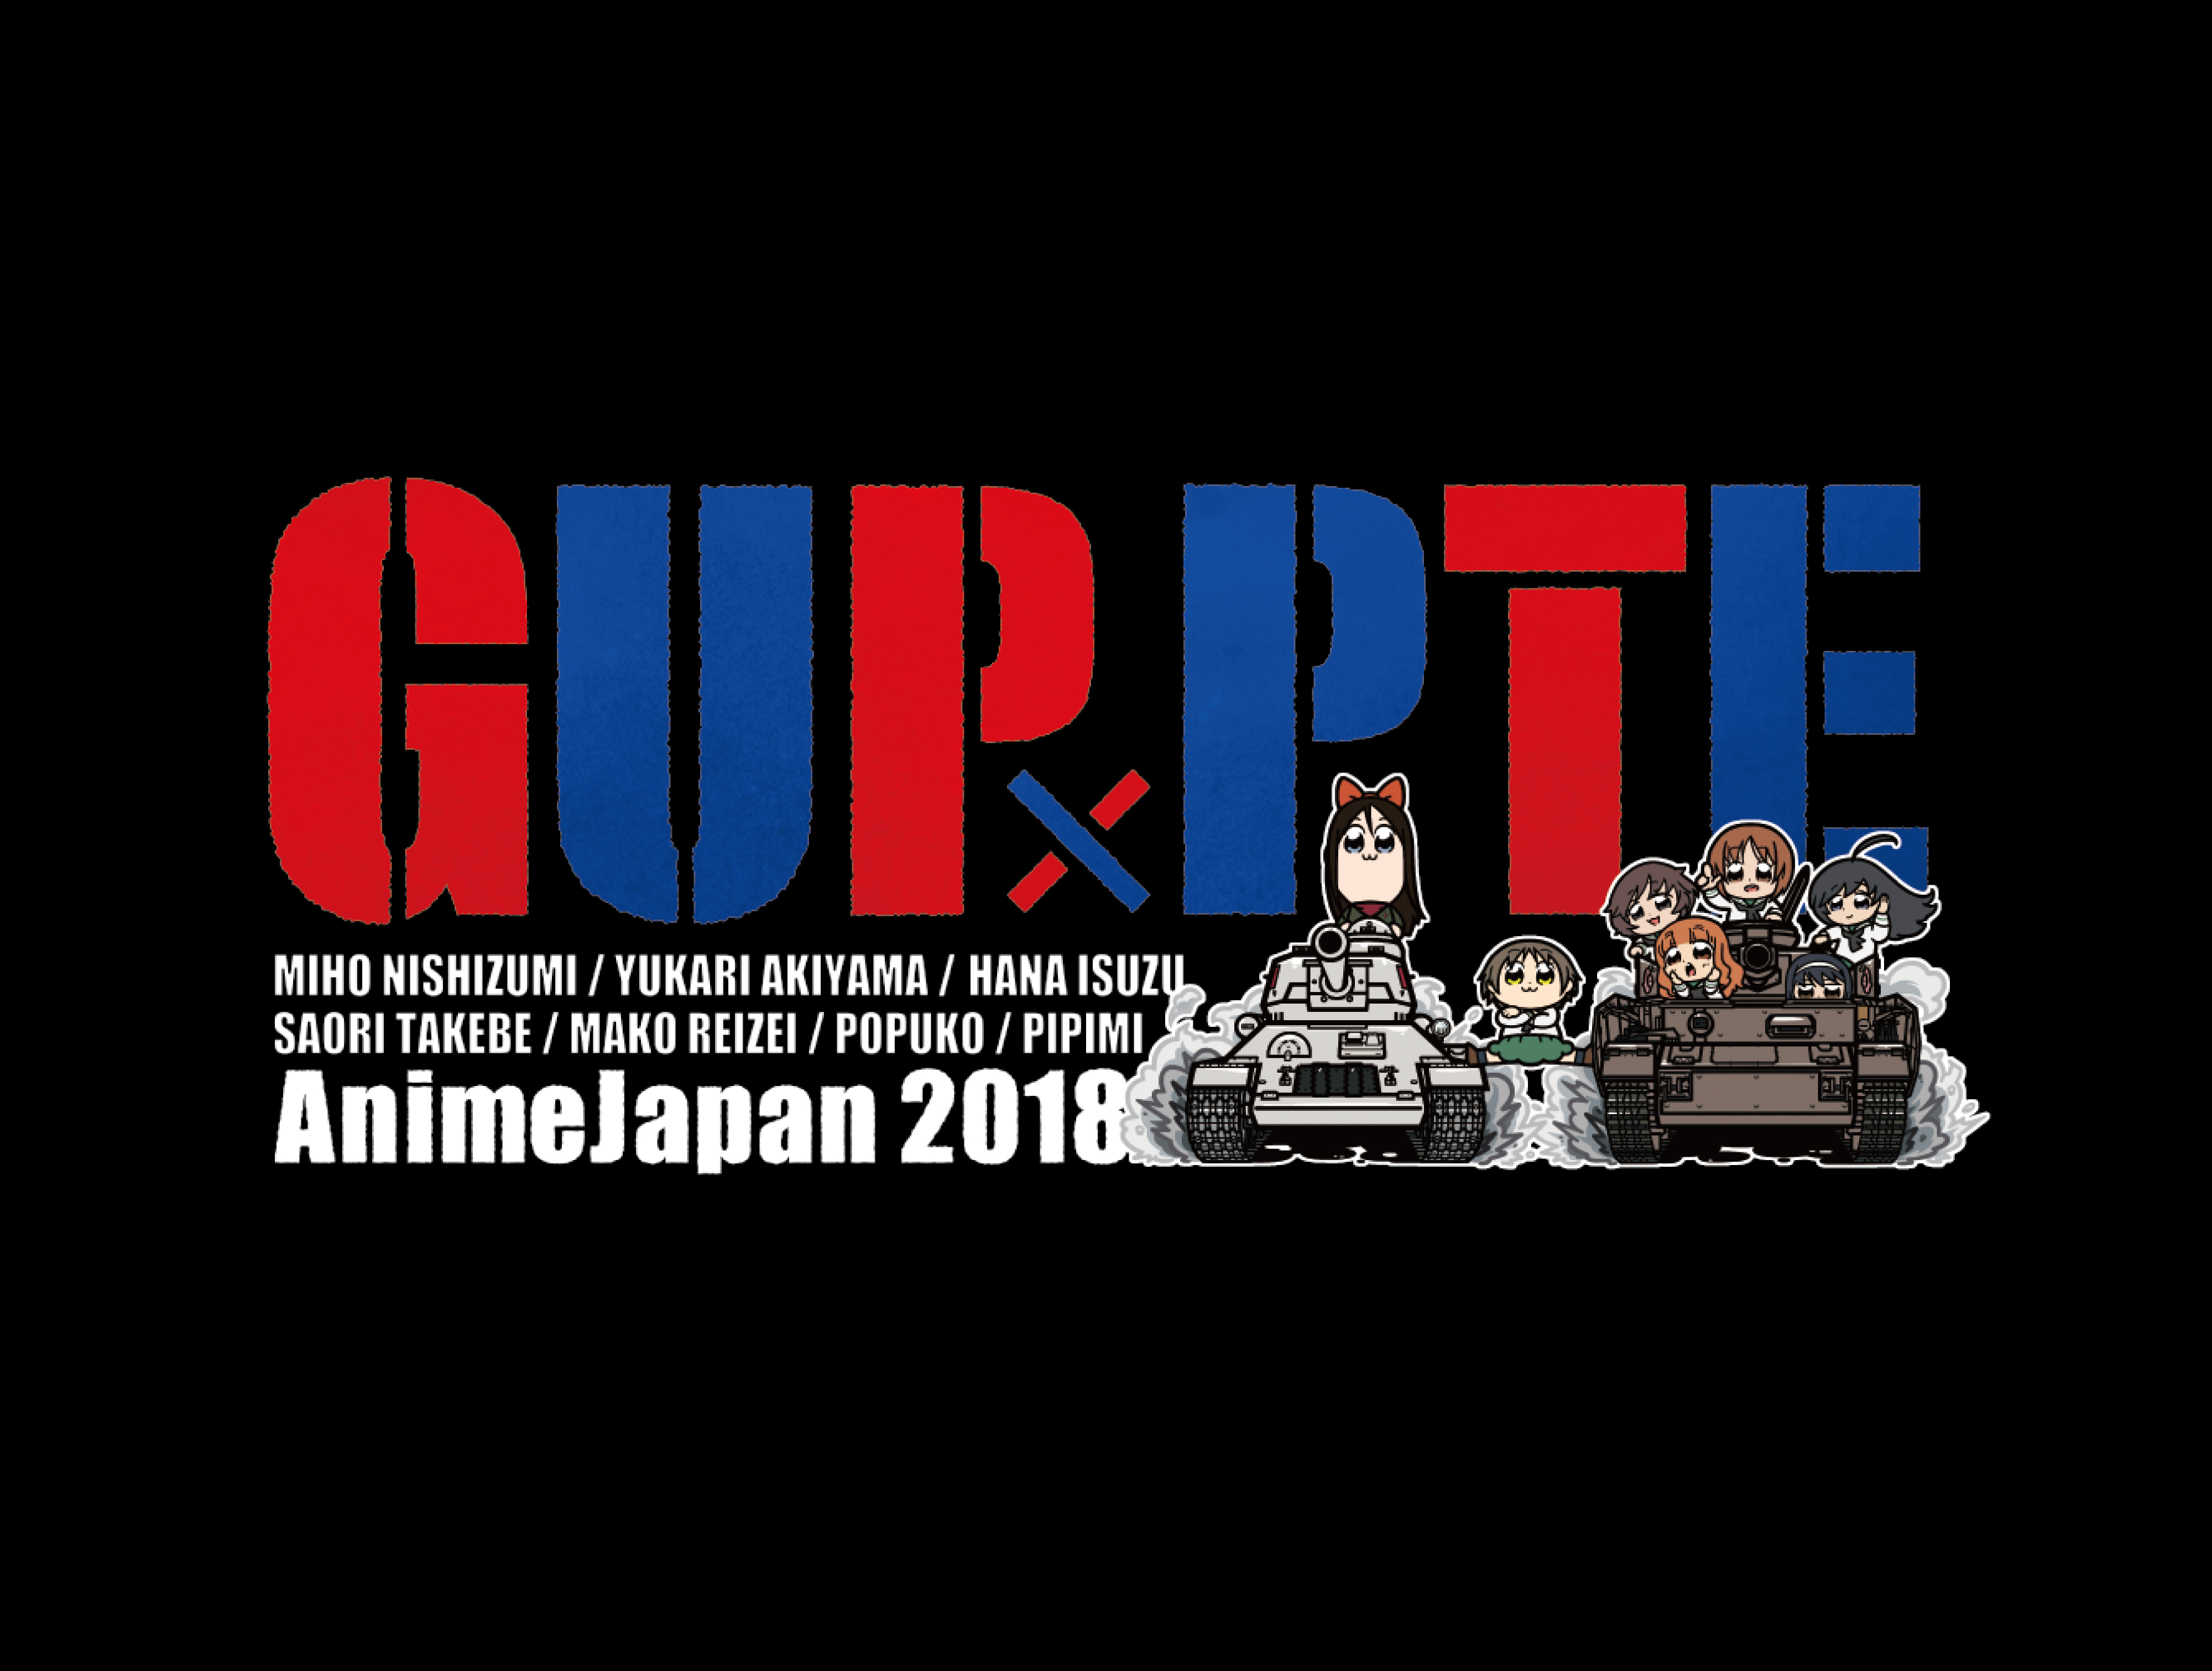 アニメジャパン2018コラボ商品公開 ファストチケット抽選申込開始 アニメイトタイムズ